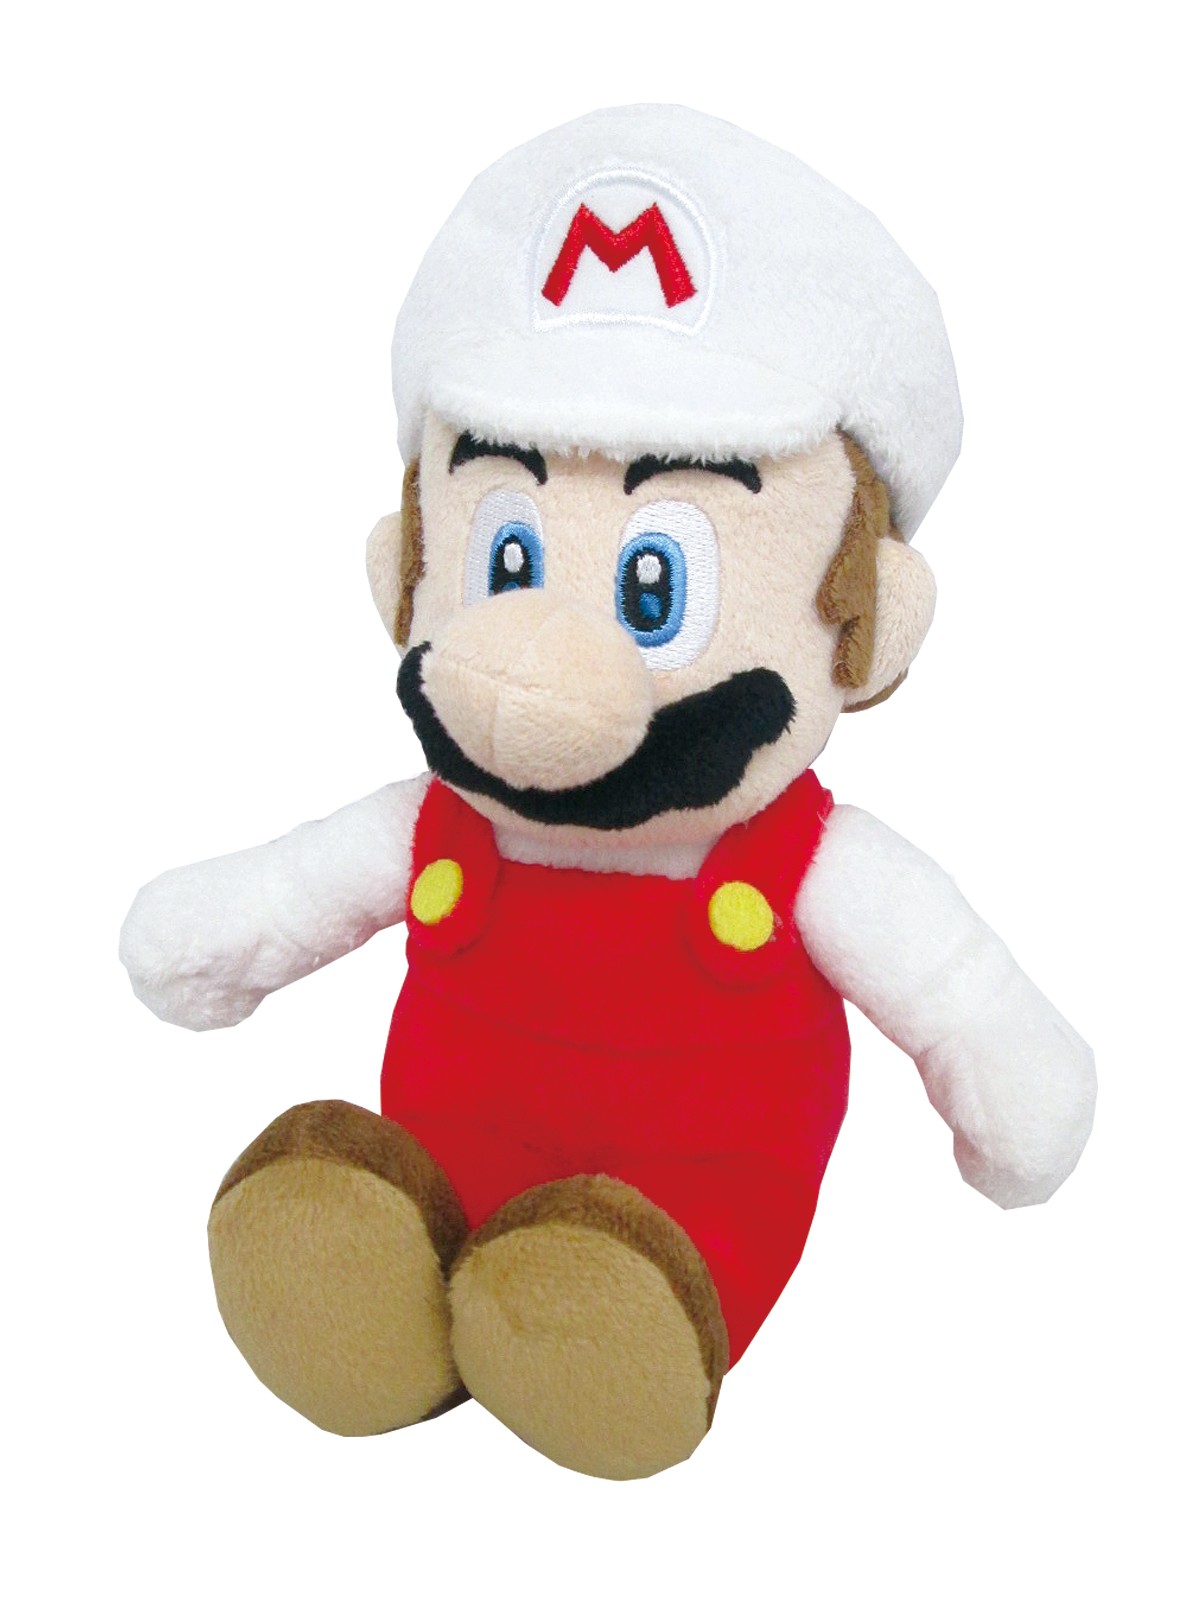 Fire Mario 10 Inch Plush